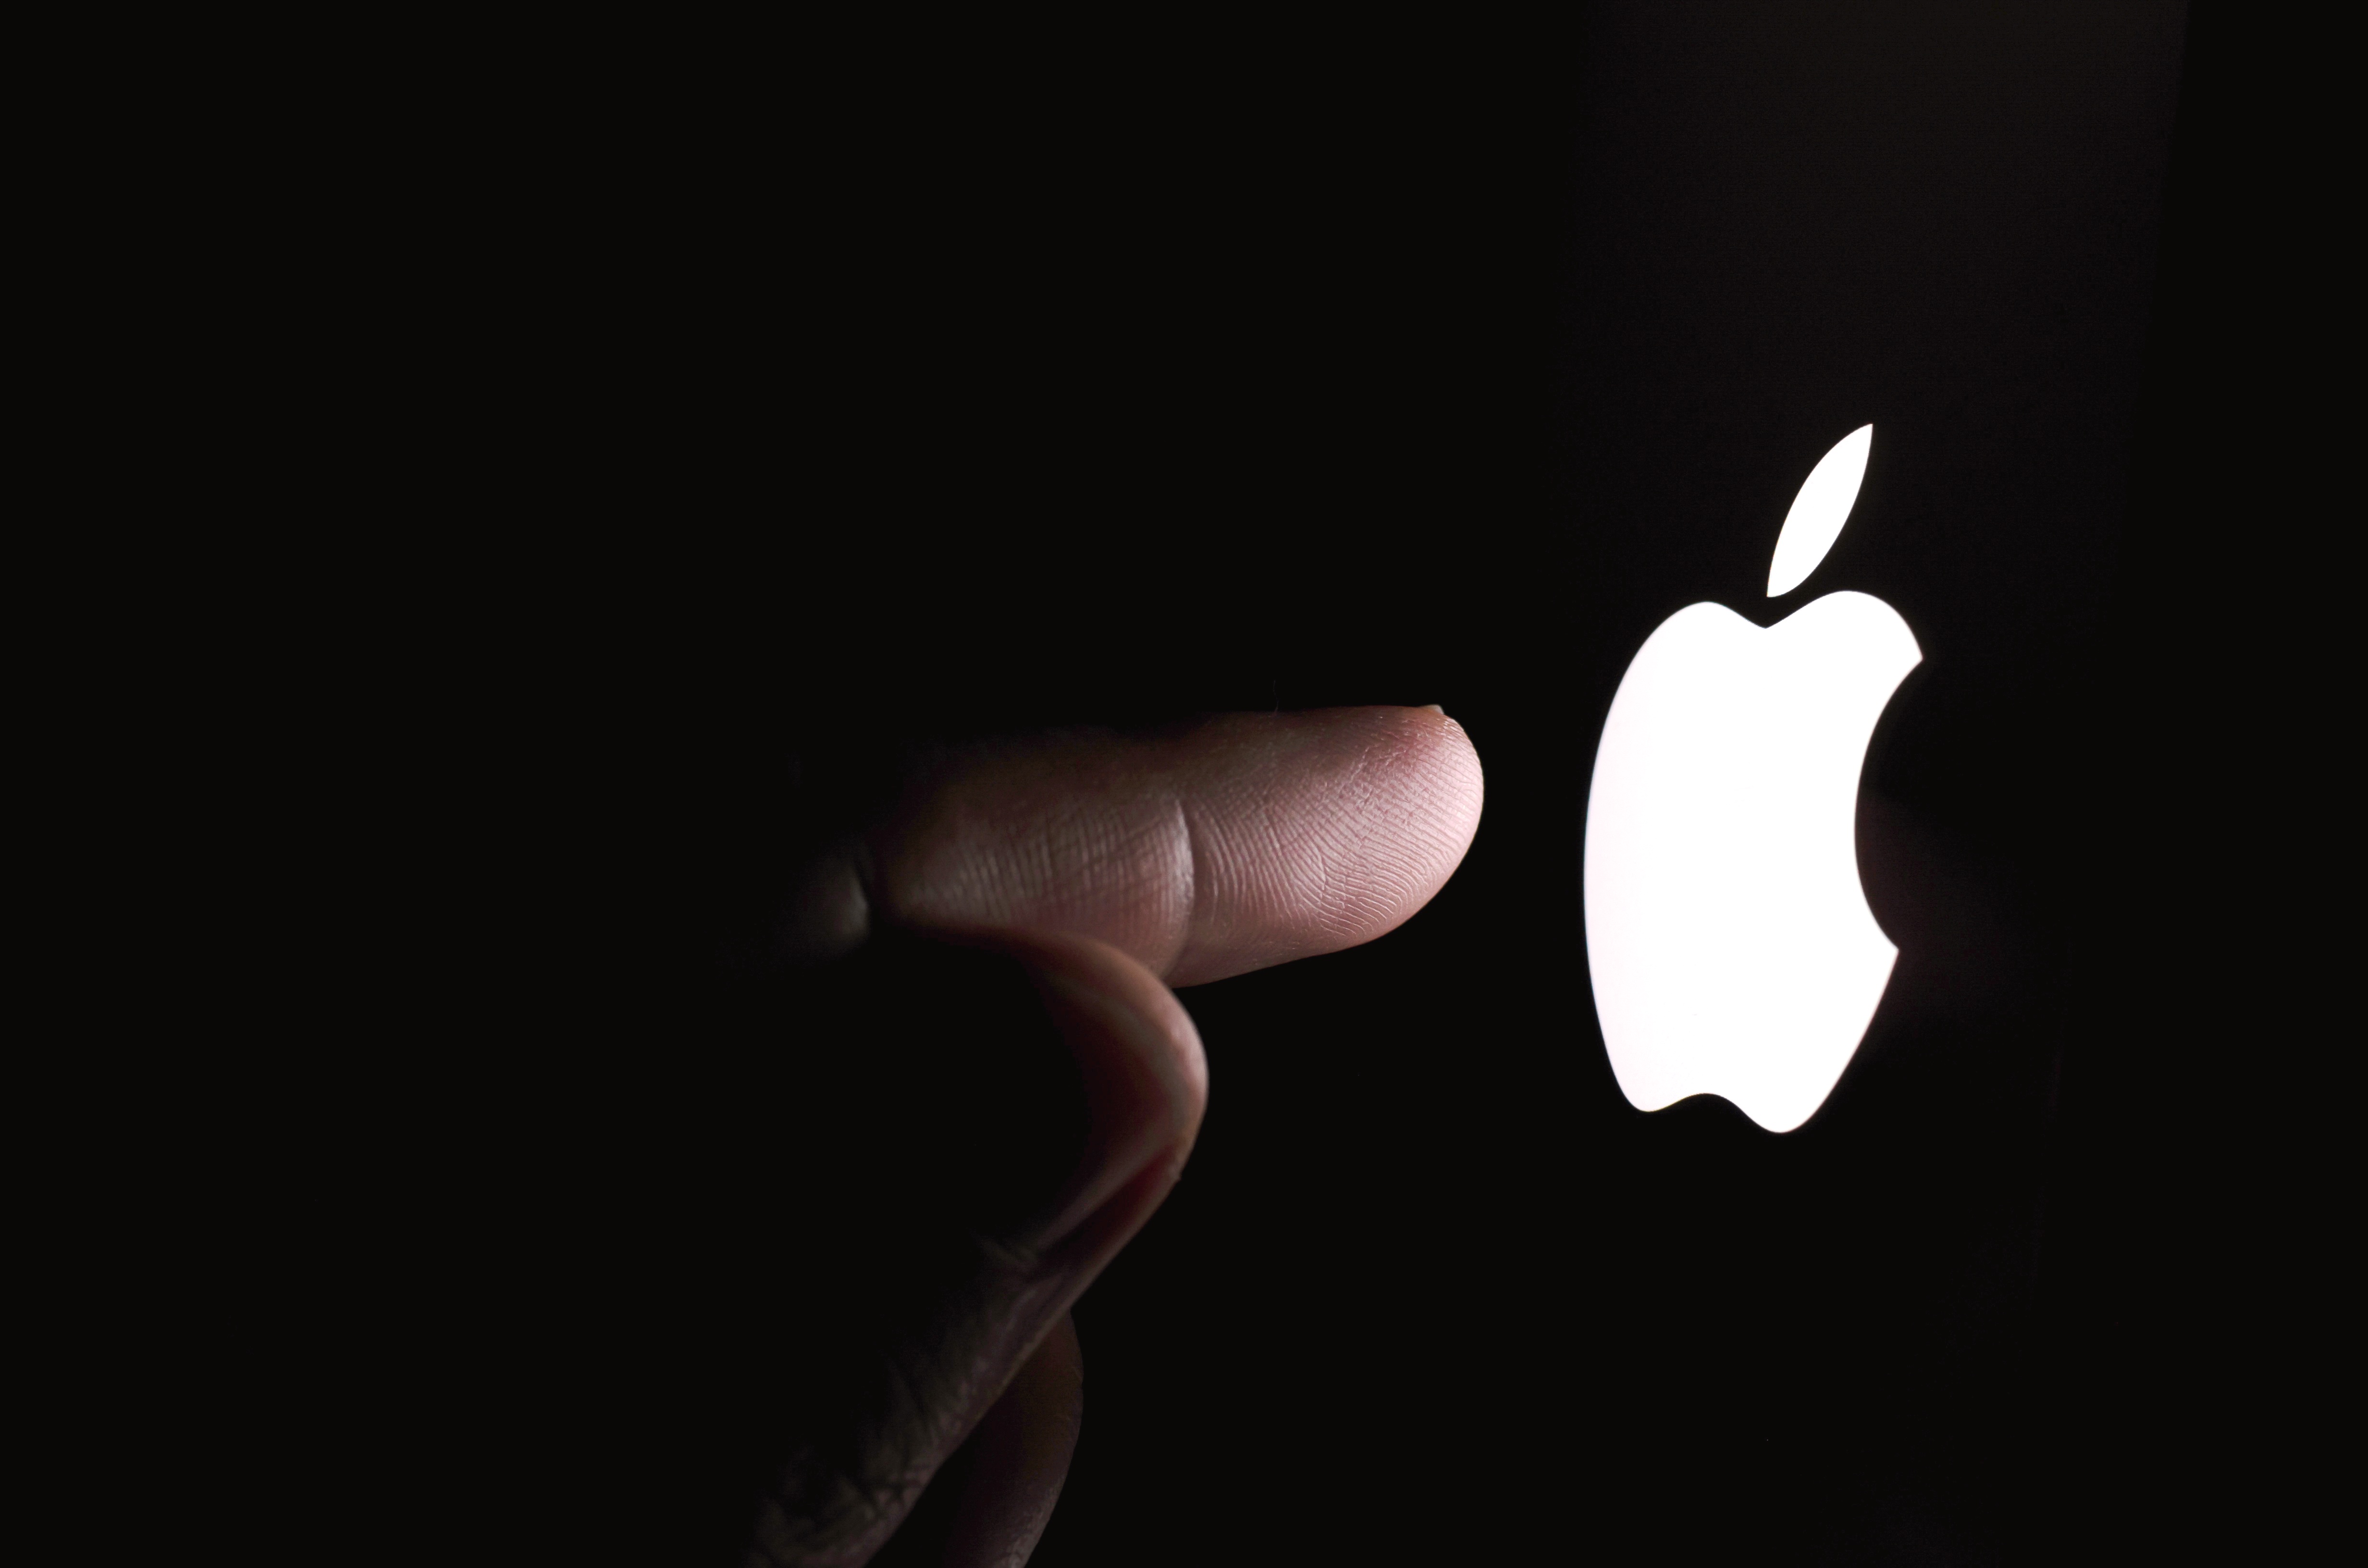 Bí mật về logo Apple - Ban đầu không phải là quả táo